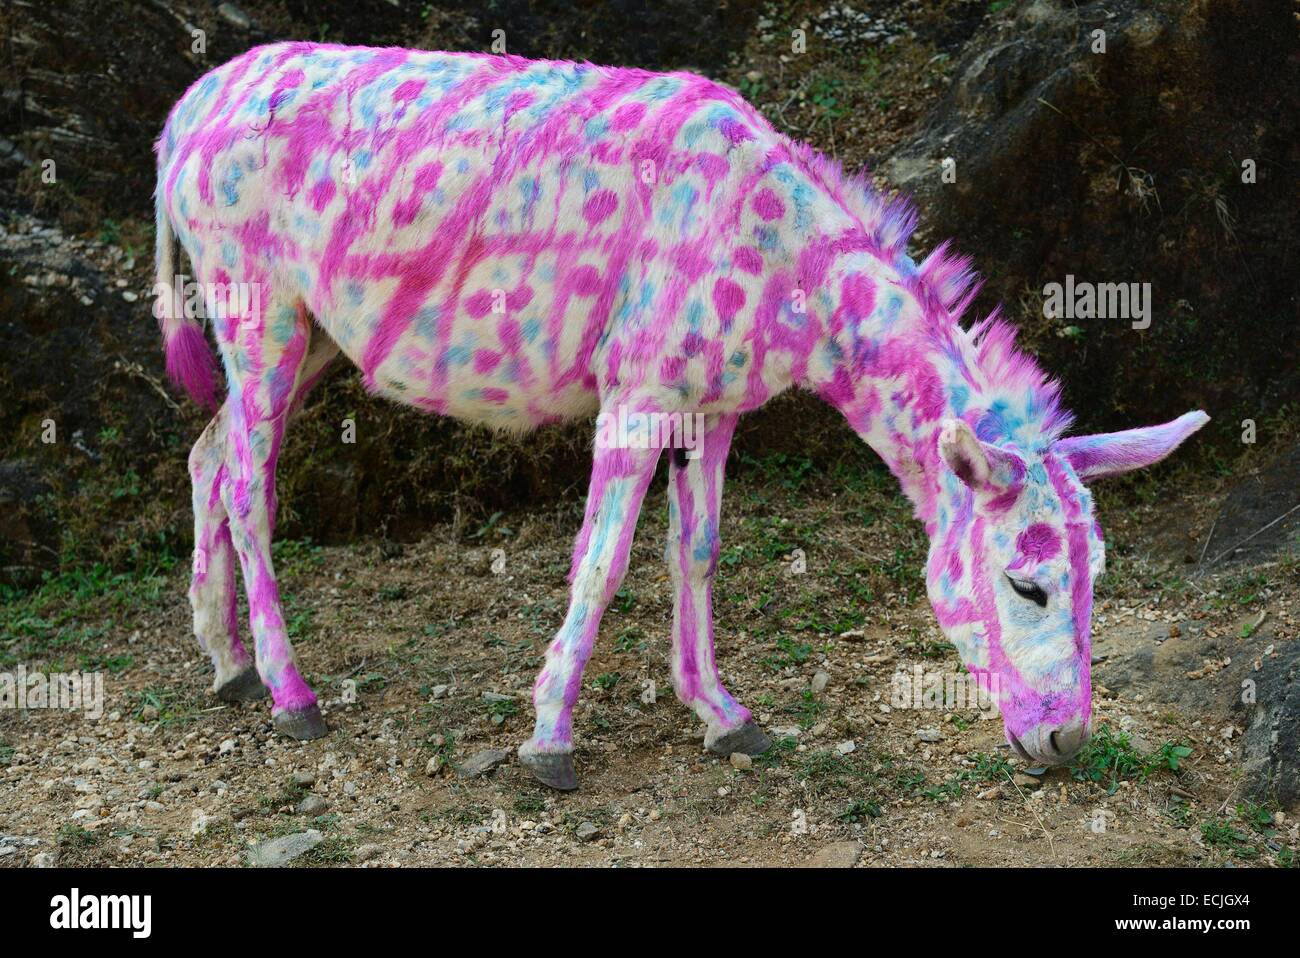 Indien, Rajasthan, Udaipur Region, Diwali Festival, bemalte Esel am vierten Tag von Diwali-Fest von tierischen Gottesdienst geprägt ist. Nutztiere sind oft aufwendig verziert oder gemalt auf den Anlass. Stockfoto